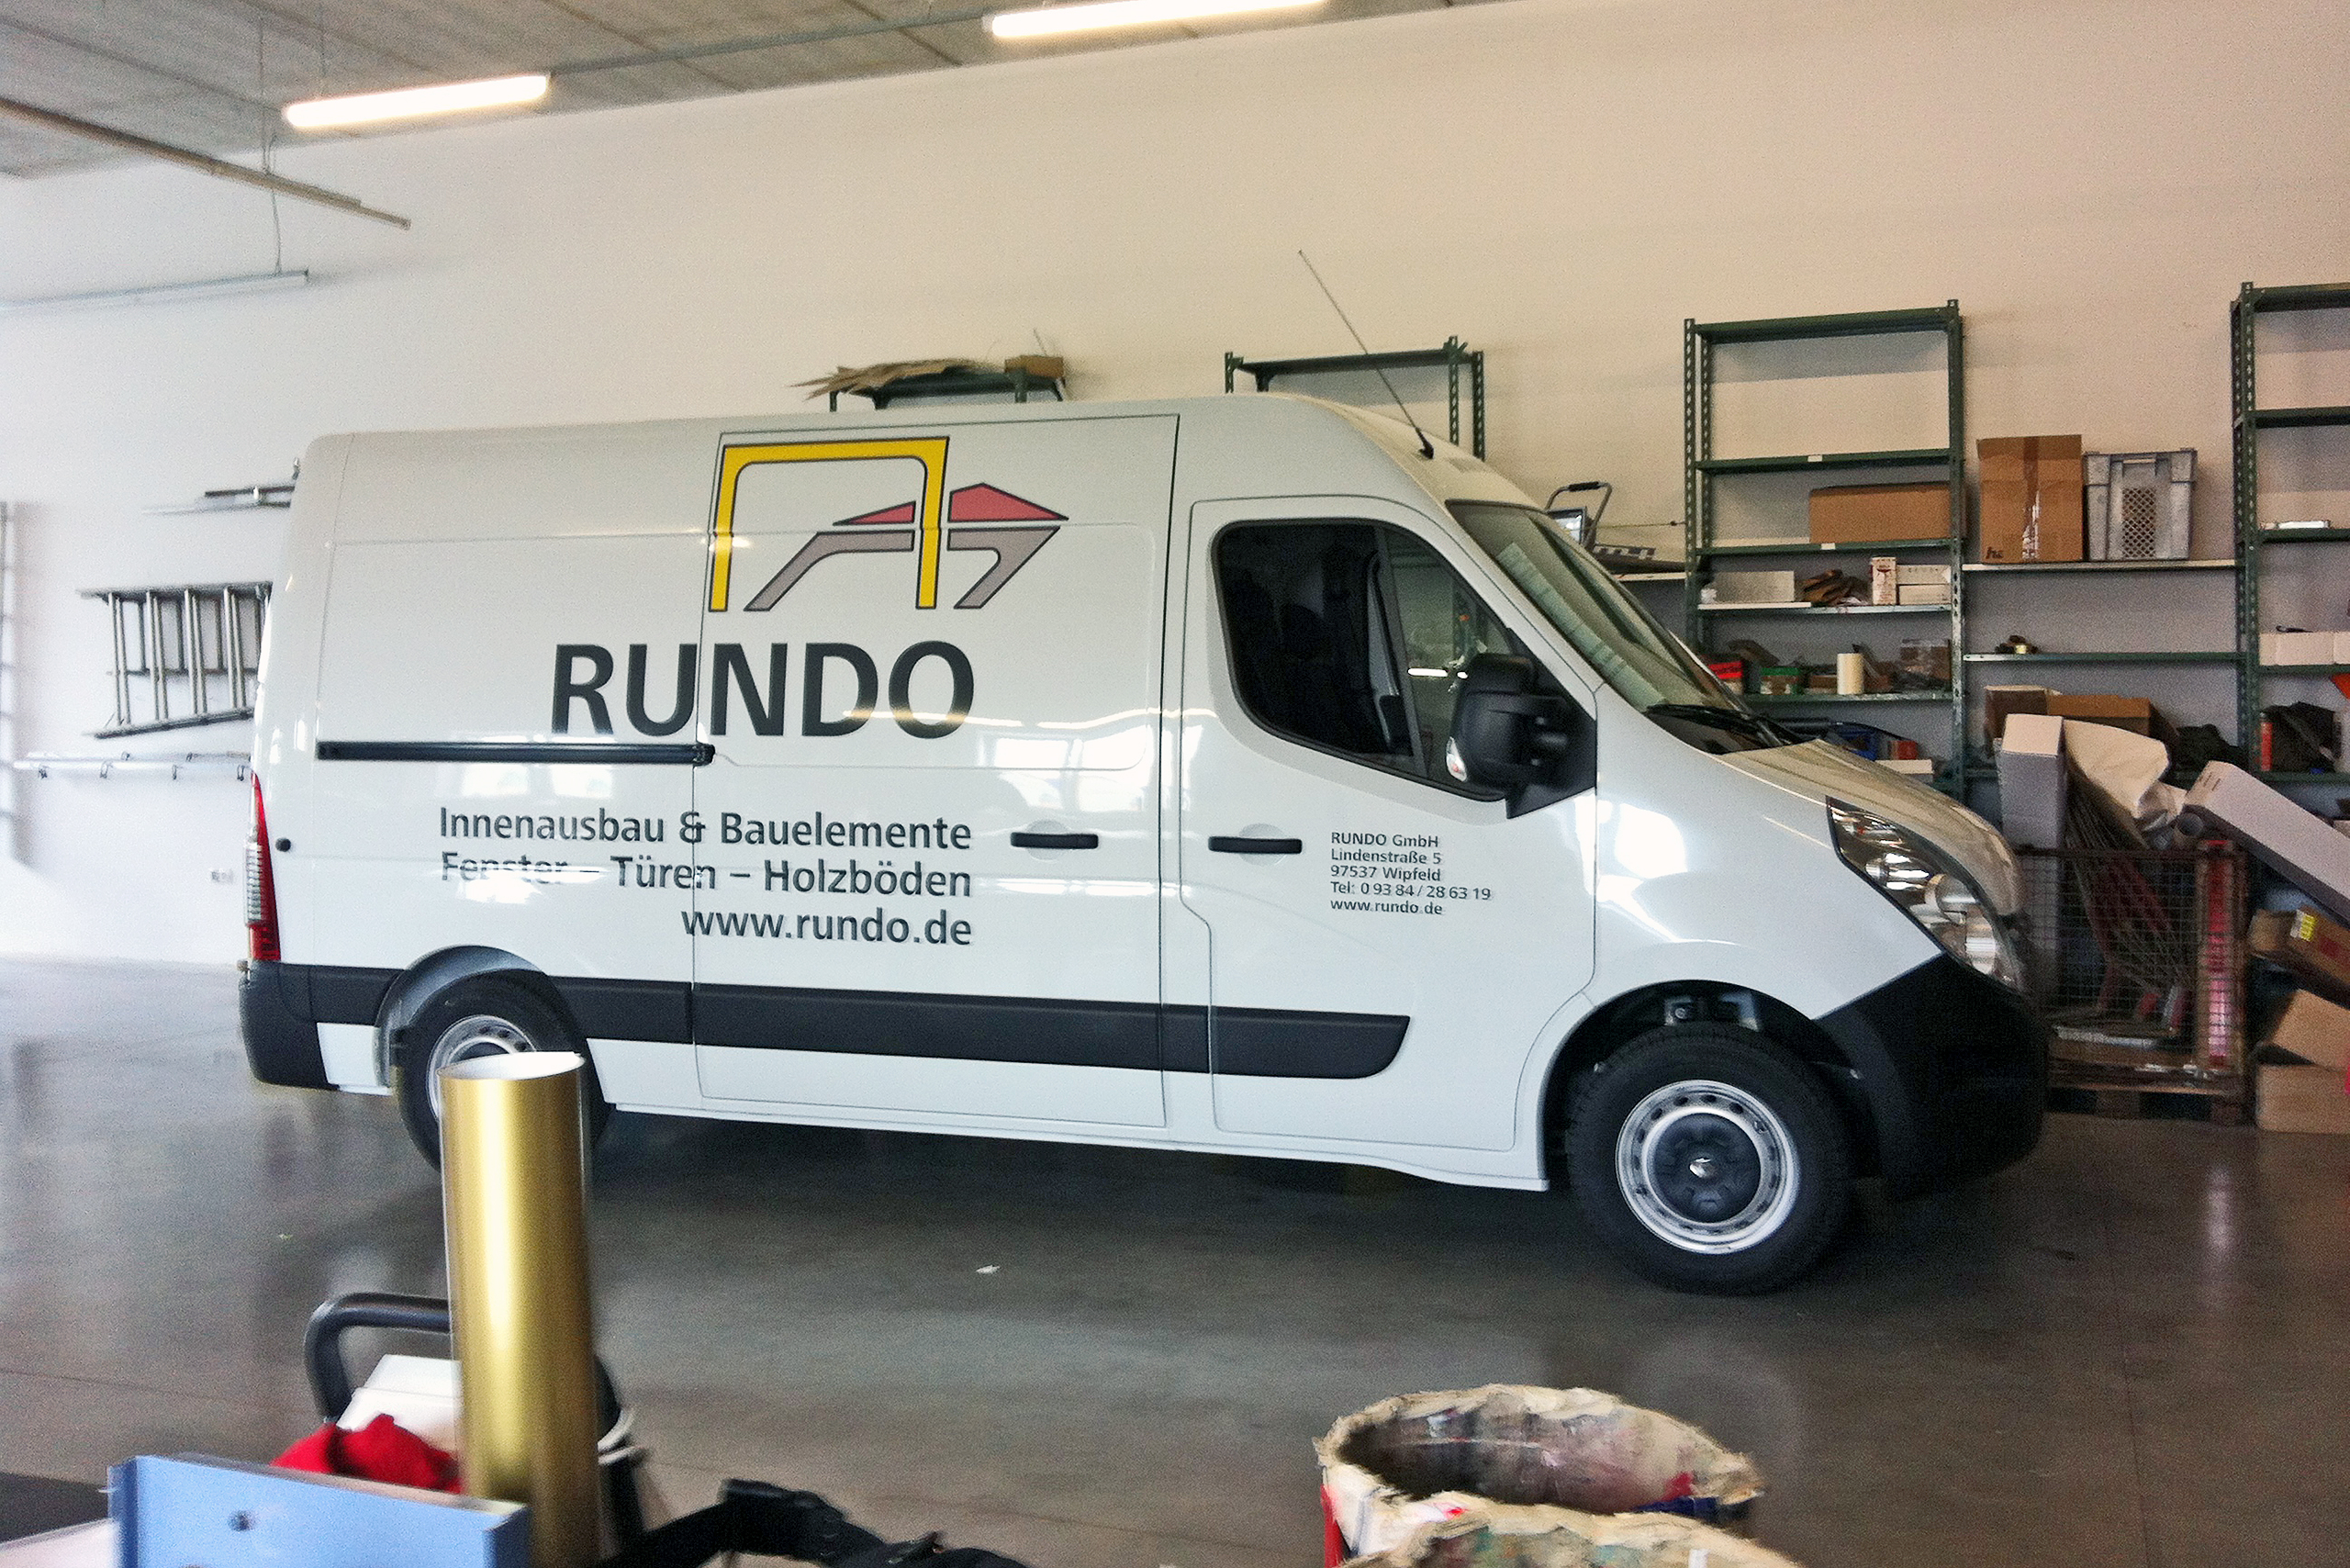 RUNDO GmbH